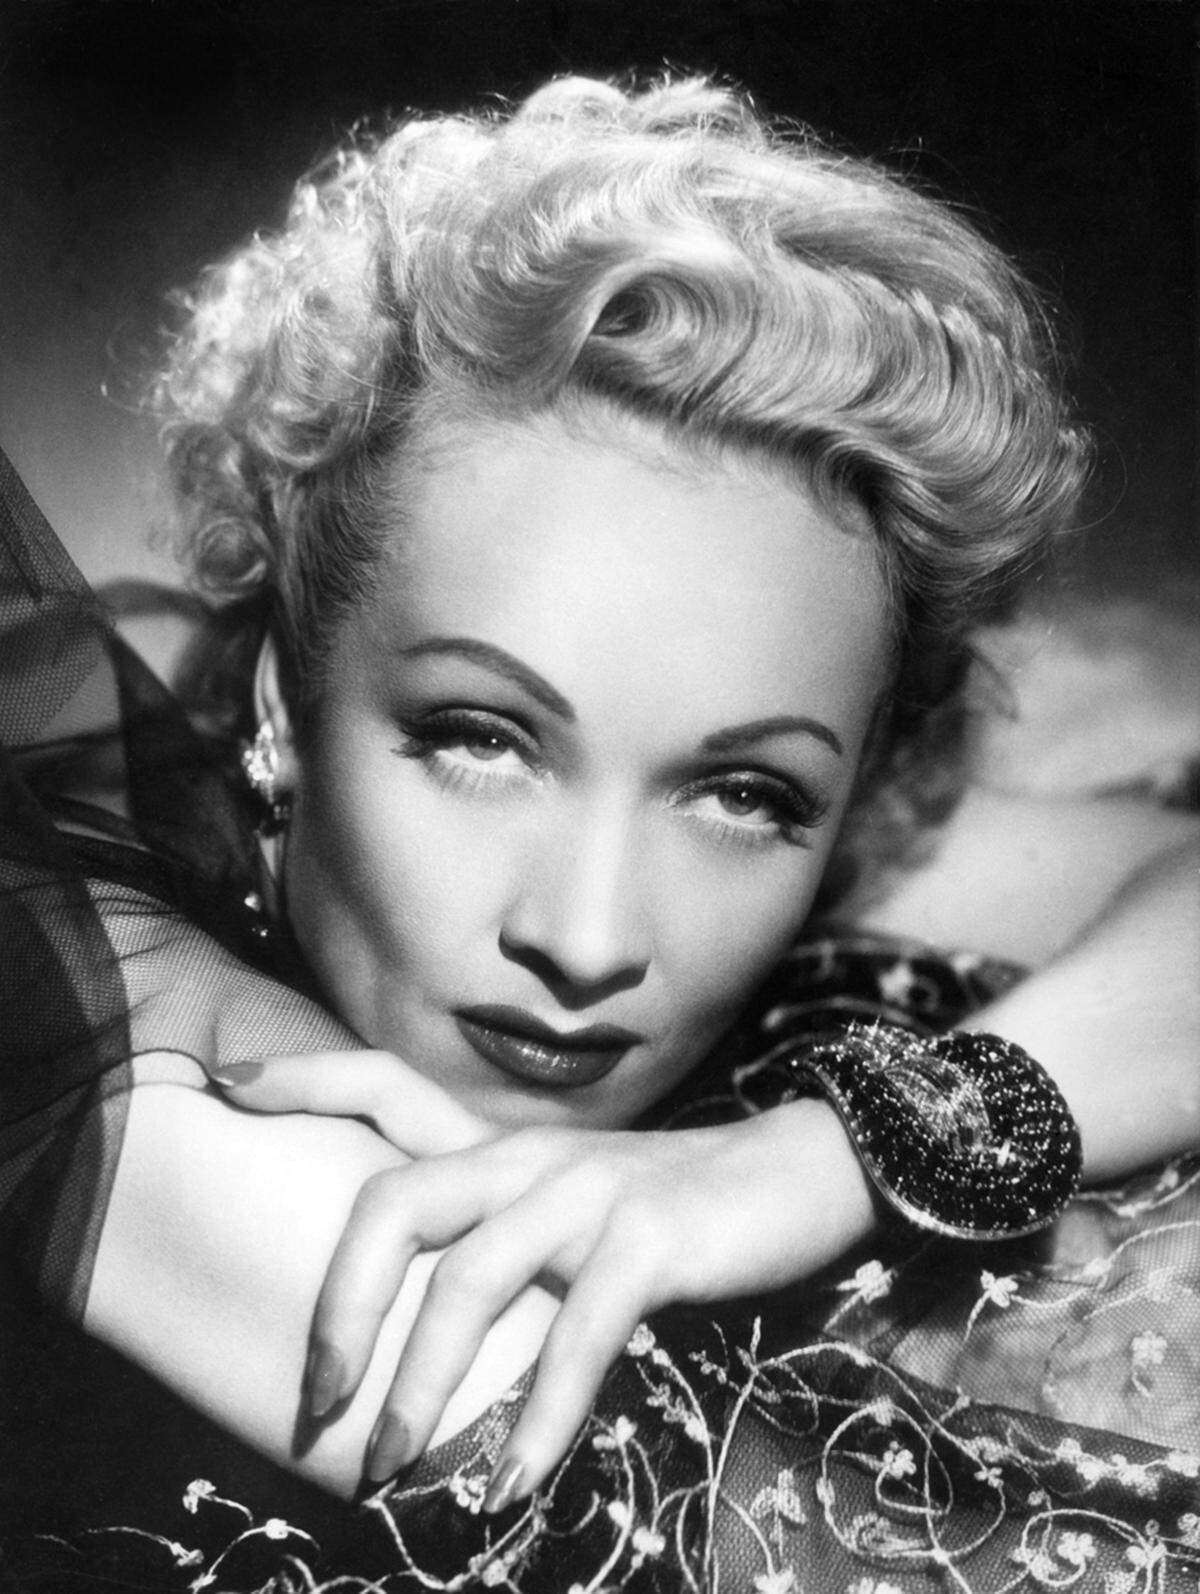 Marlene Dietrich prägte ein selbstbewusstes Frauenbild mit Hosenanzügen und Zigaretten im Mundwinkel. Dieses wurde aber bald durch das mütterliche Ideal verdrängt, das durch den Nationalsozialismus immer mehr aufkam. Die Emanzipation war vom Tisch, als schön galt ein häuslicher Frauentyp, der ungeschminkt und natürlich sowie im besten Falle blond war.